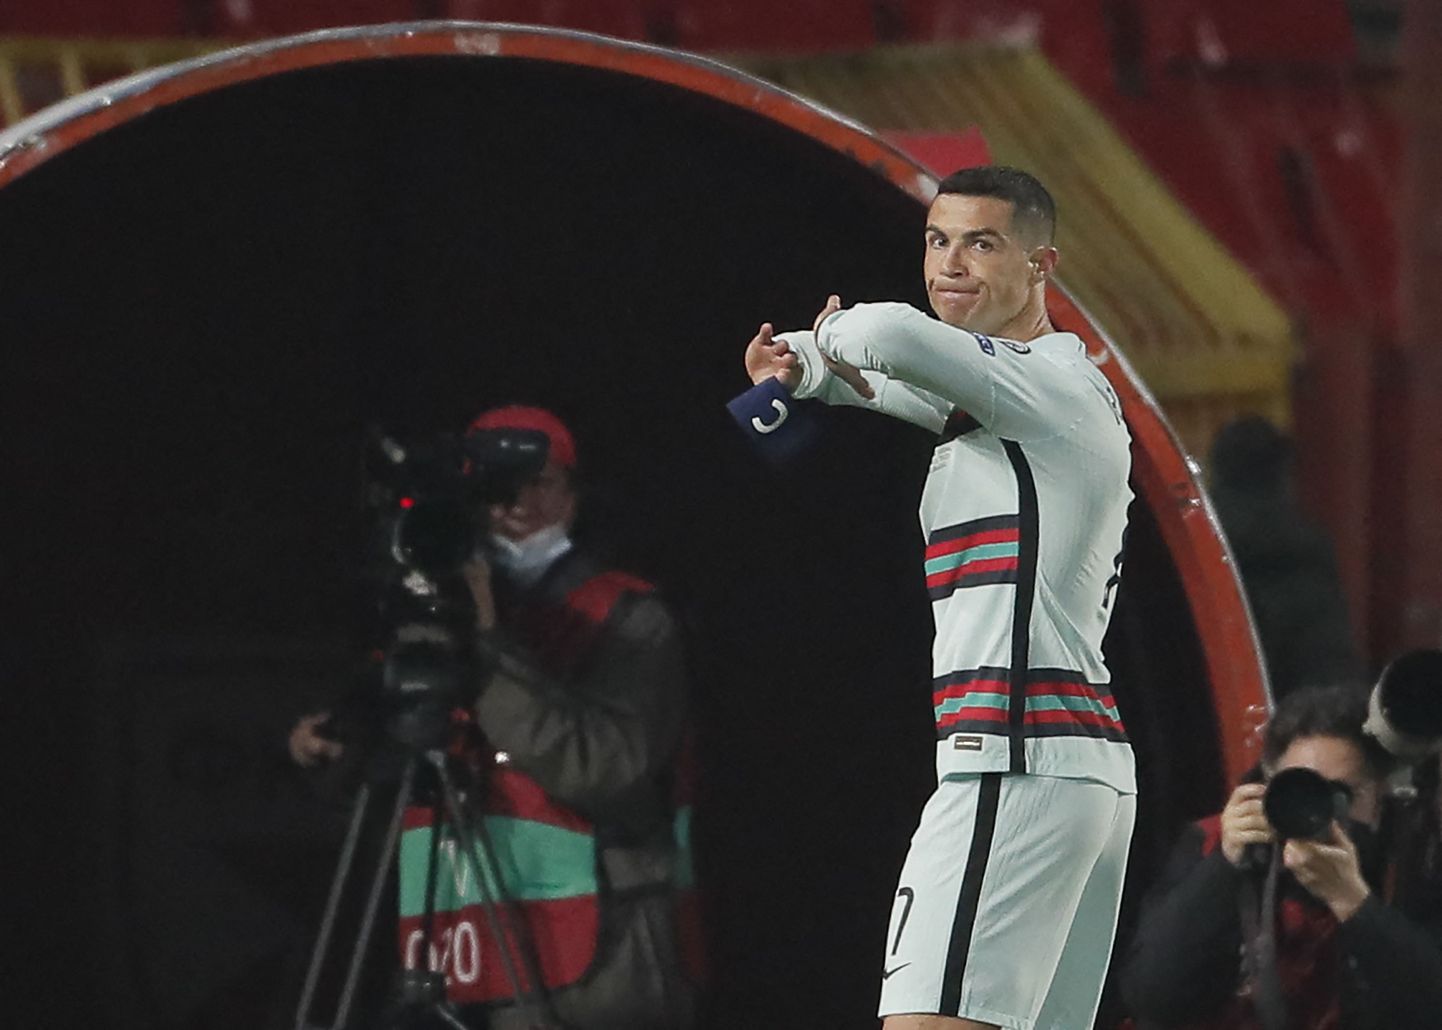 Cristiano Ronaldo viskas suures vihahoos kaptenipaela vastu maad. Üks õnnelik turvamees võis tänu sellele saada miljonäriks.